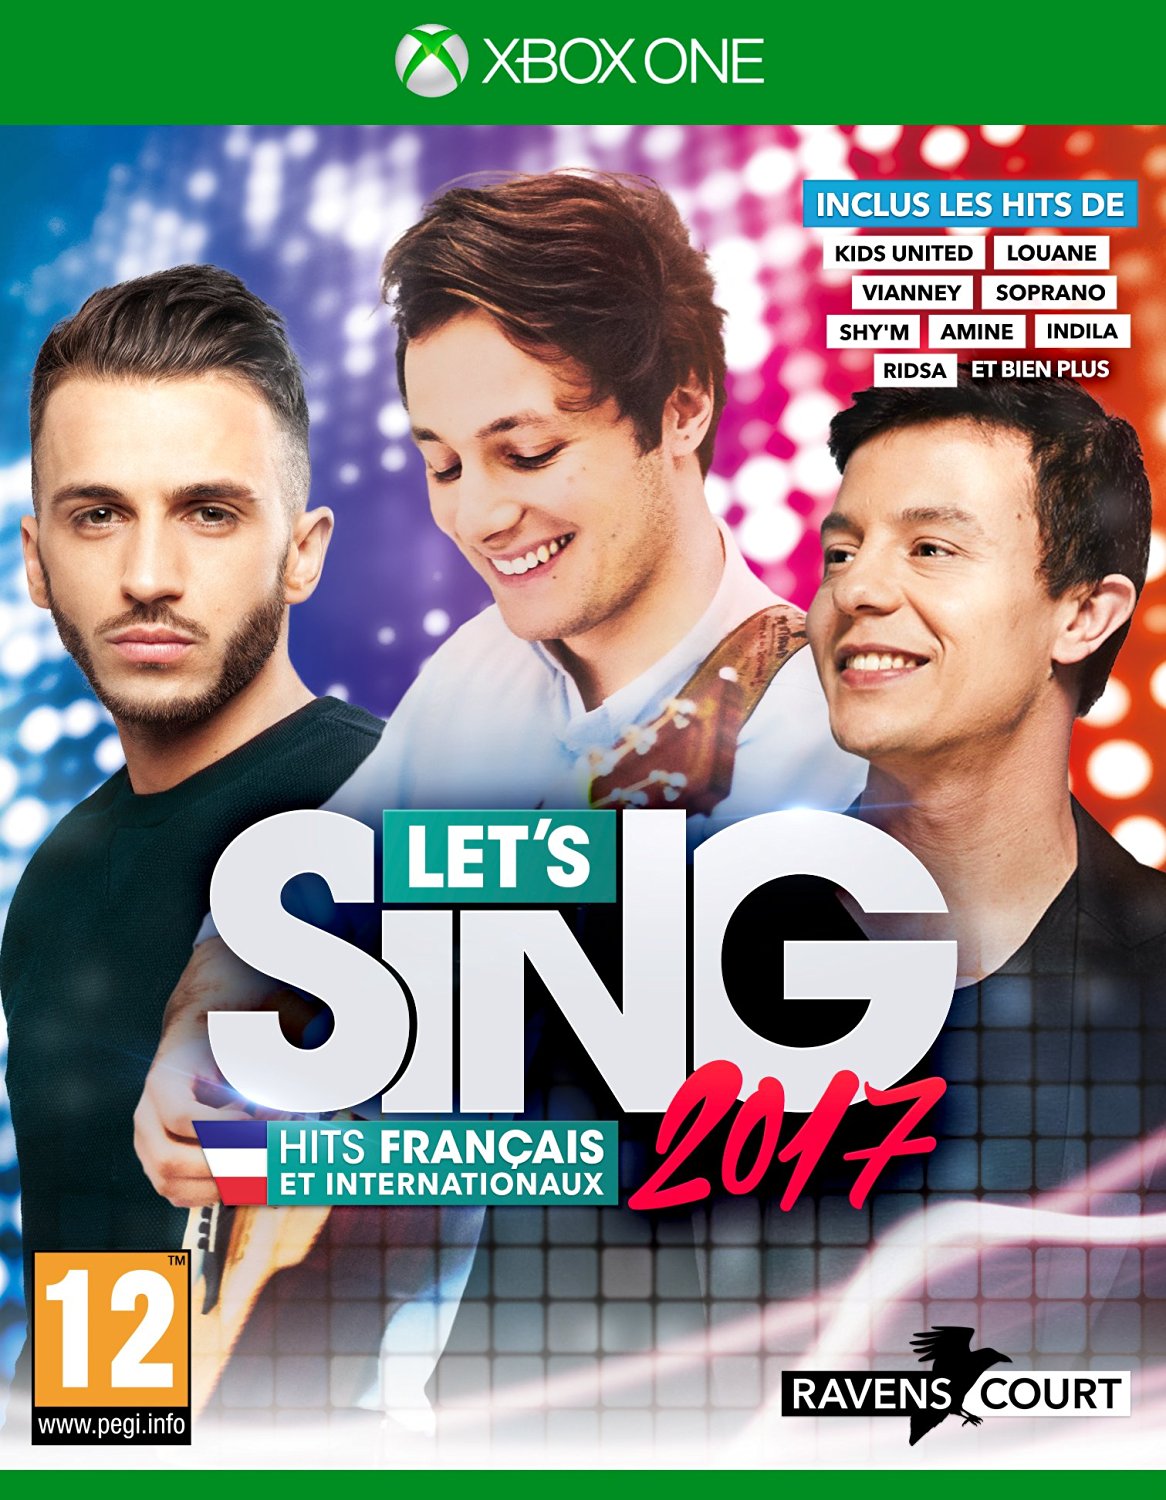 Lets Sing 2017 Hits Francaiss et Internationaux - Xbox One Játékok